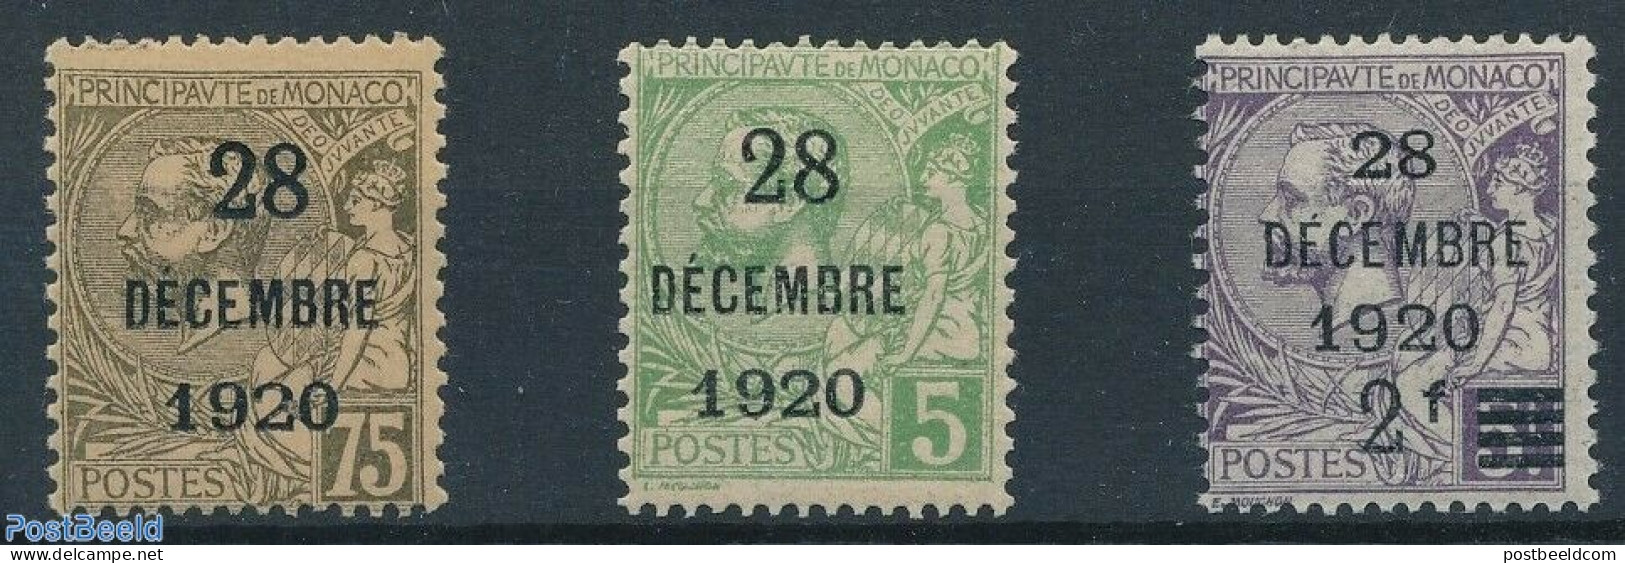 Monaco 1921 28 DEC 1920 Overprints 3v, Unused (hinged) - Unused Stamps